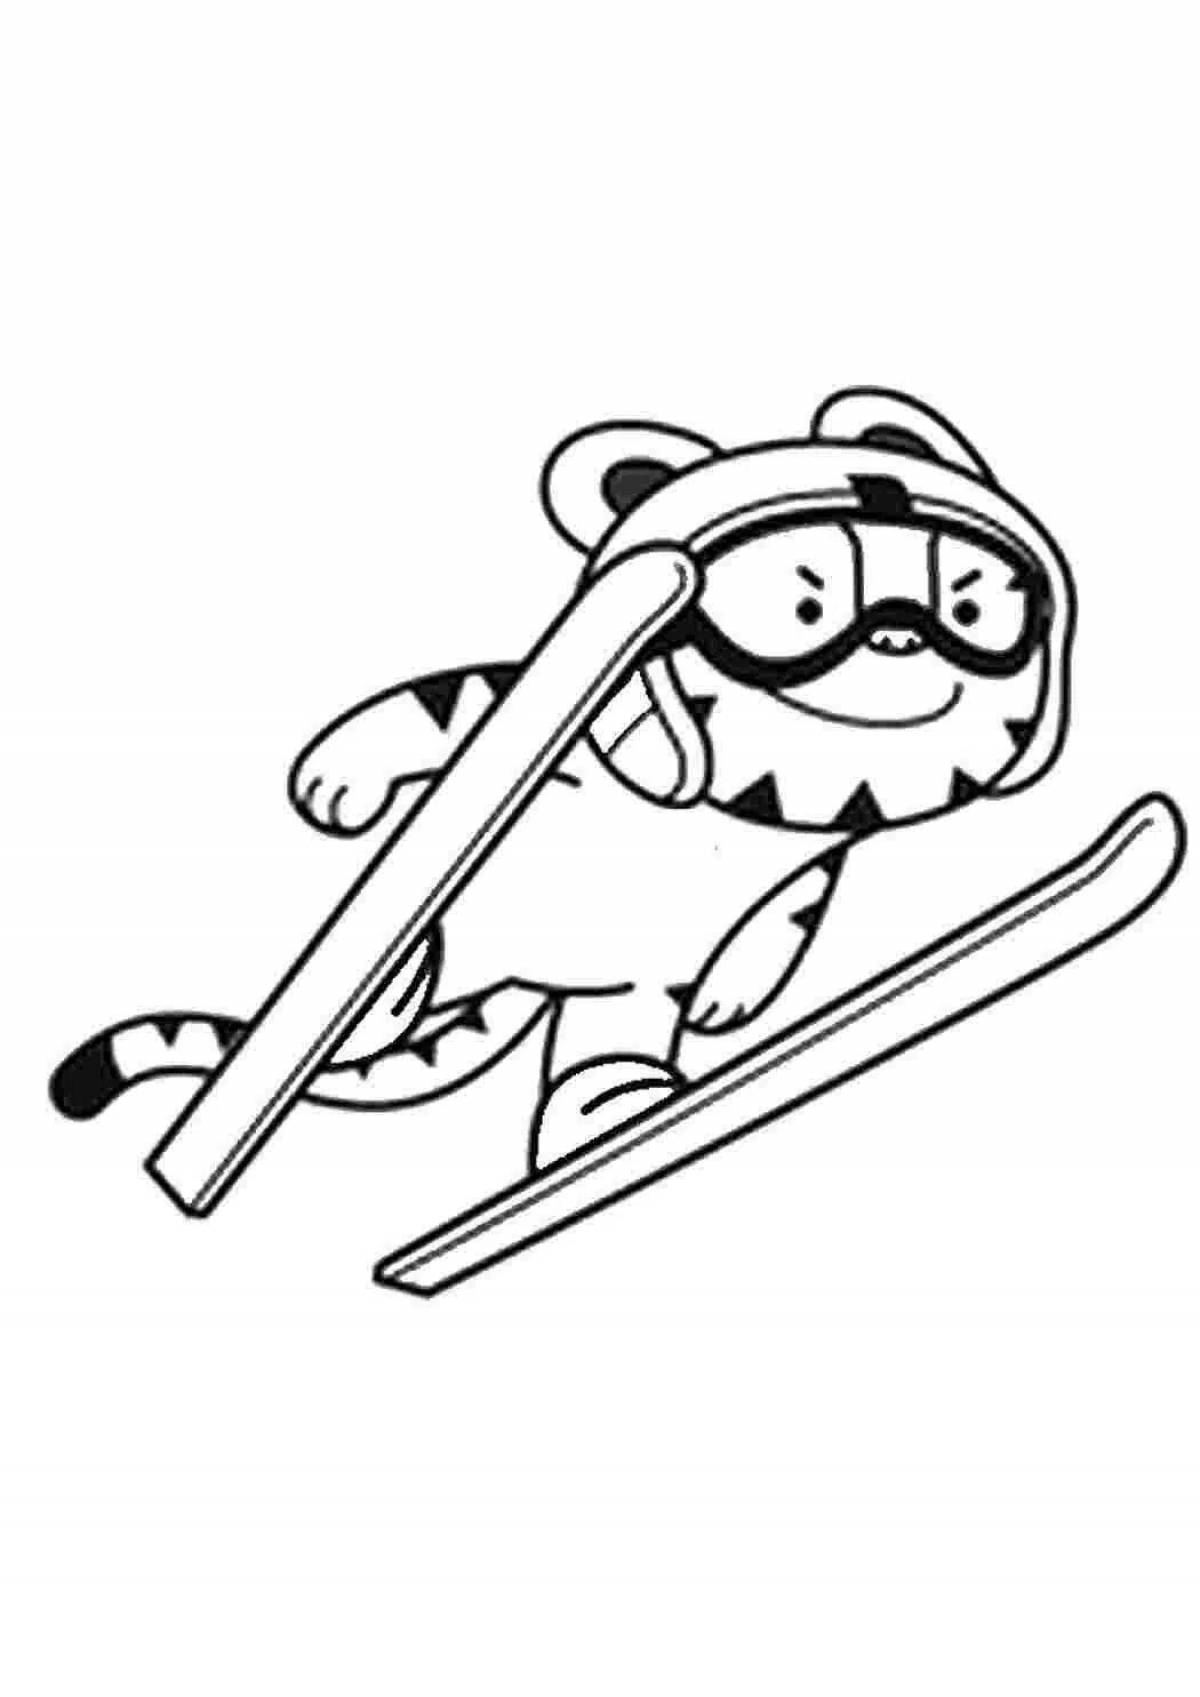 Comic ski jumping coloring book